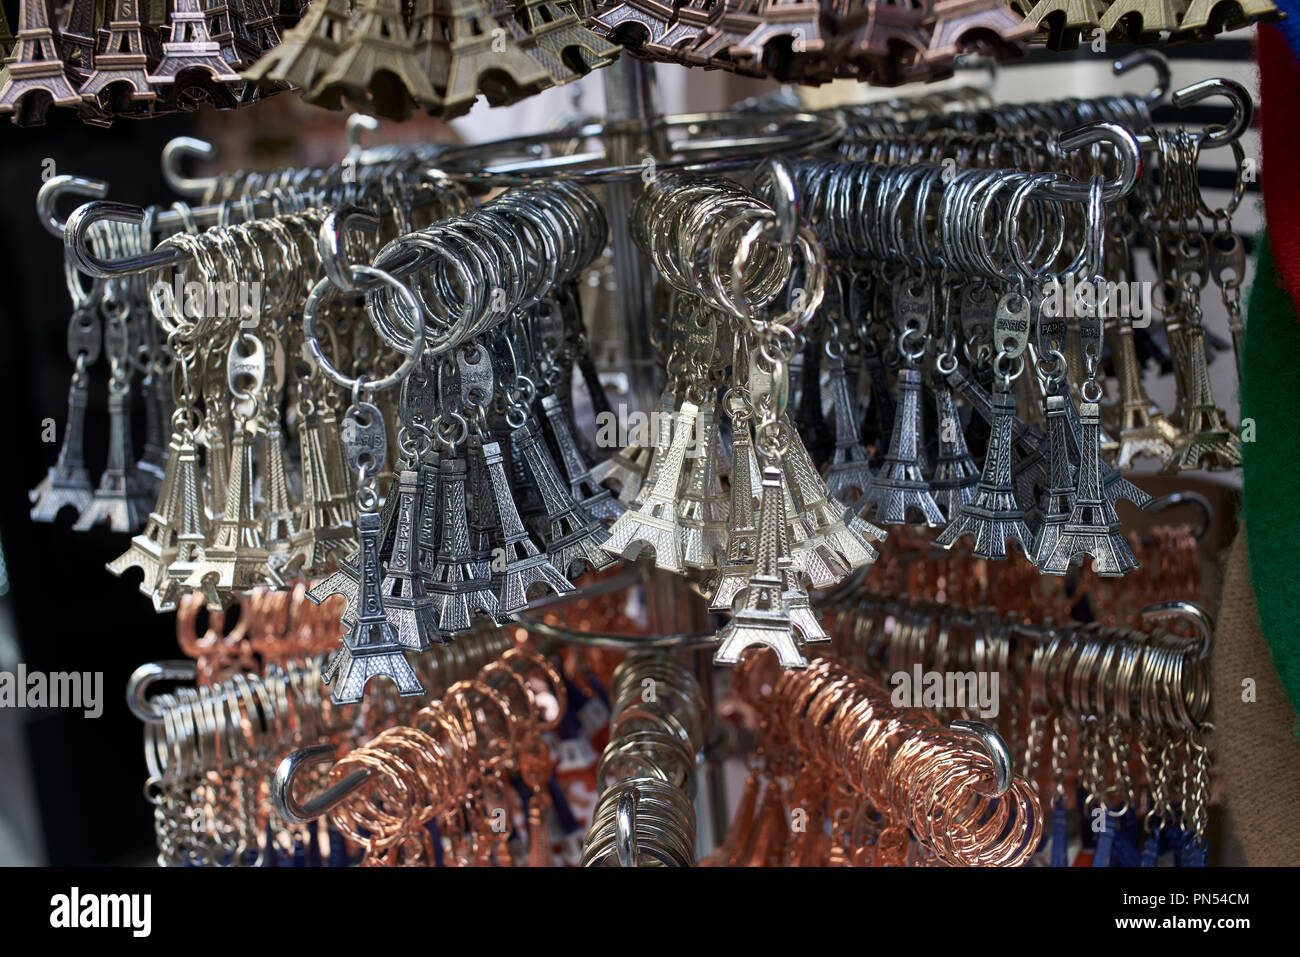 Eiffel Tower souvenir key hangers, Paris France Stock Photo